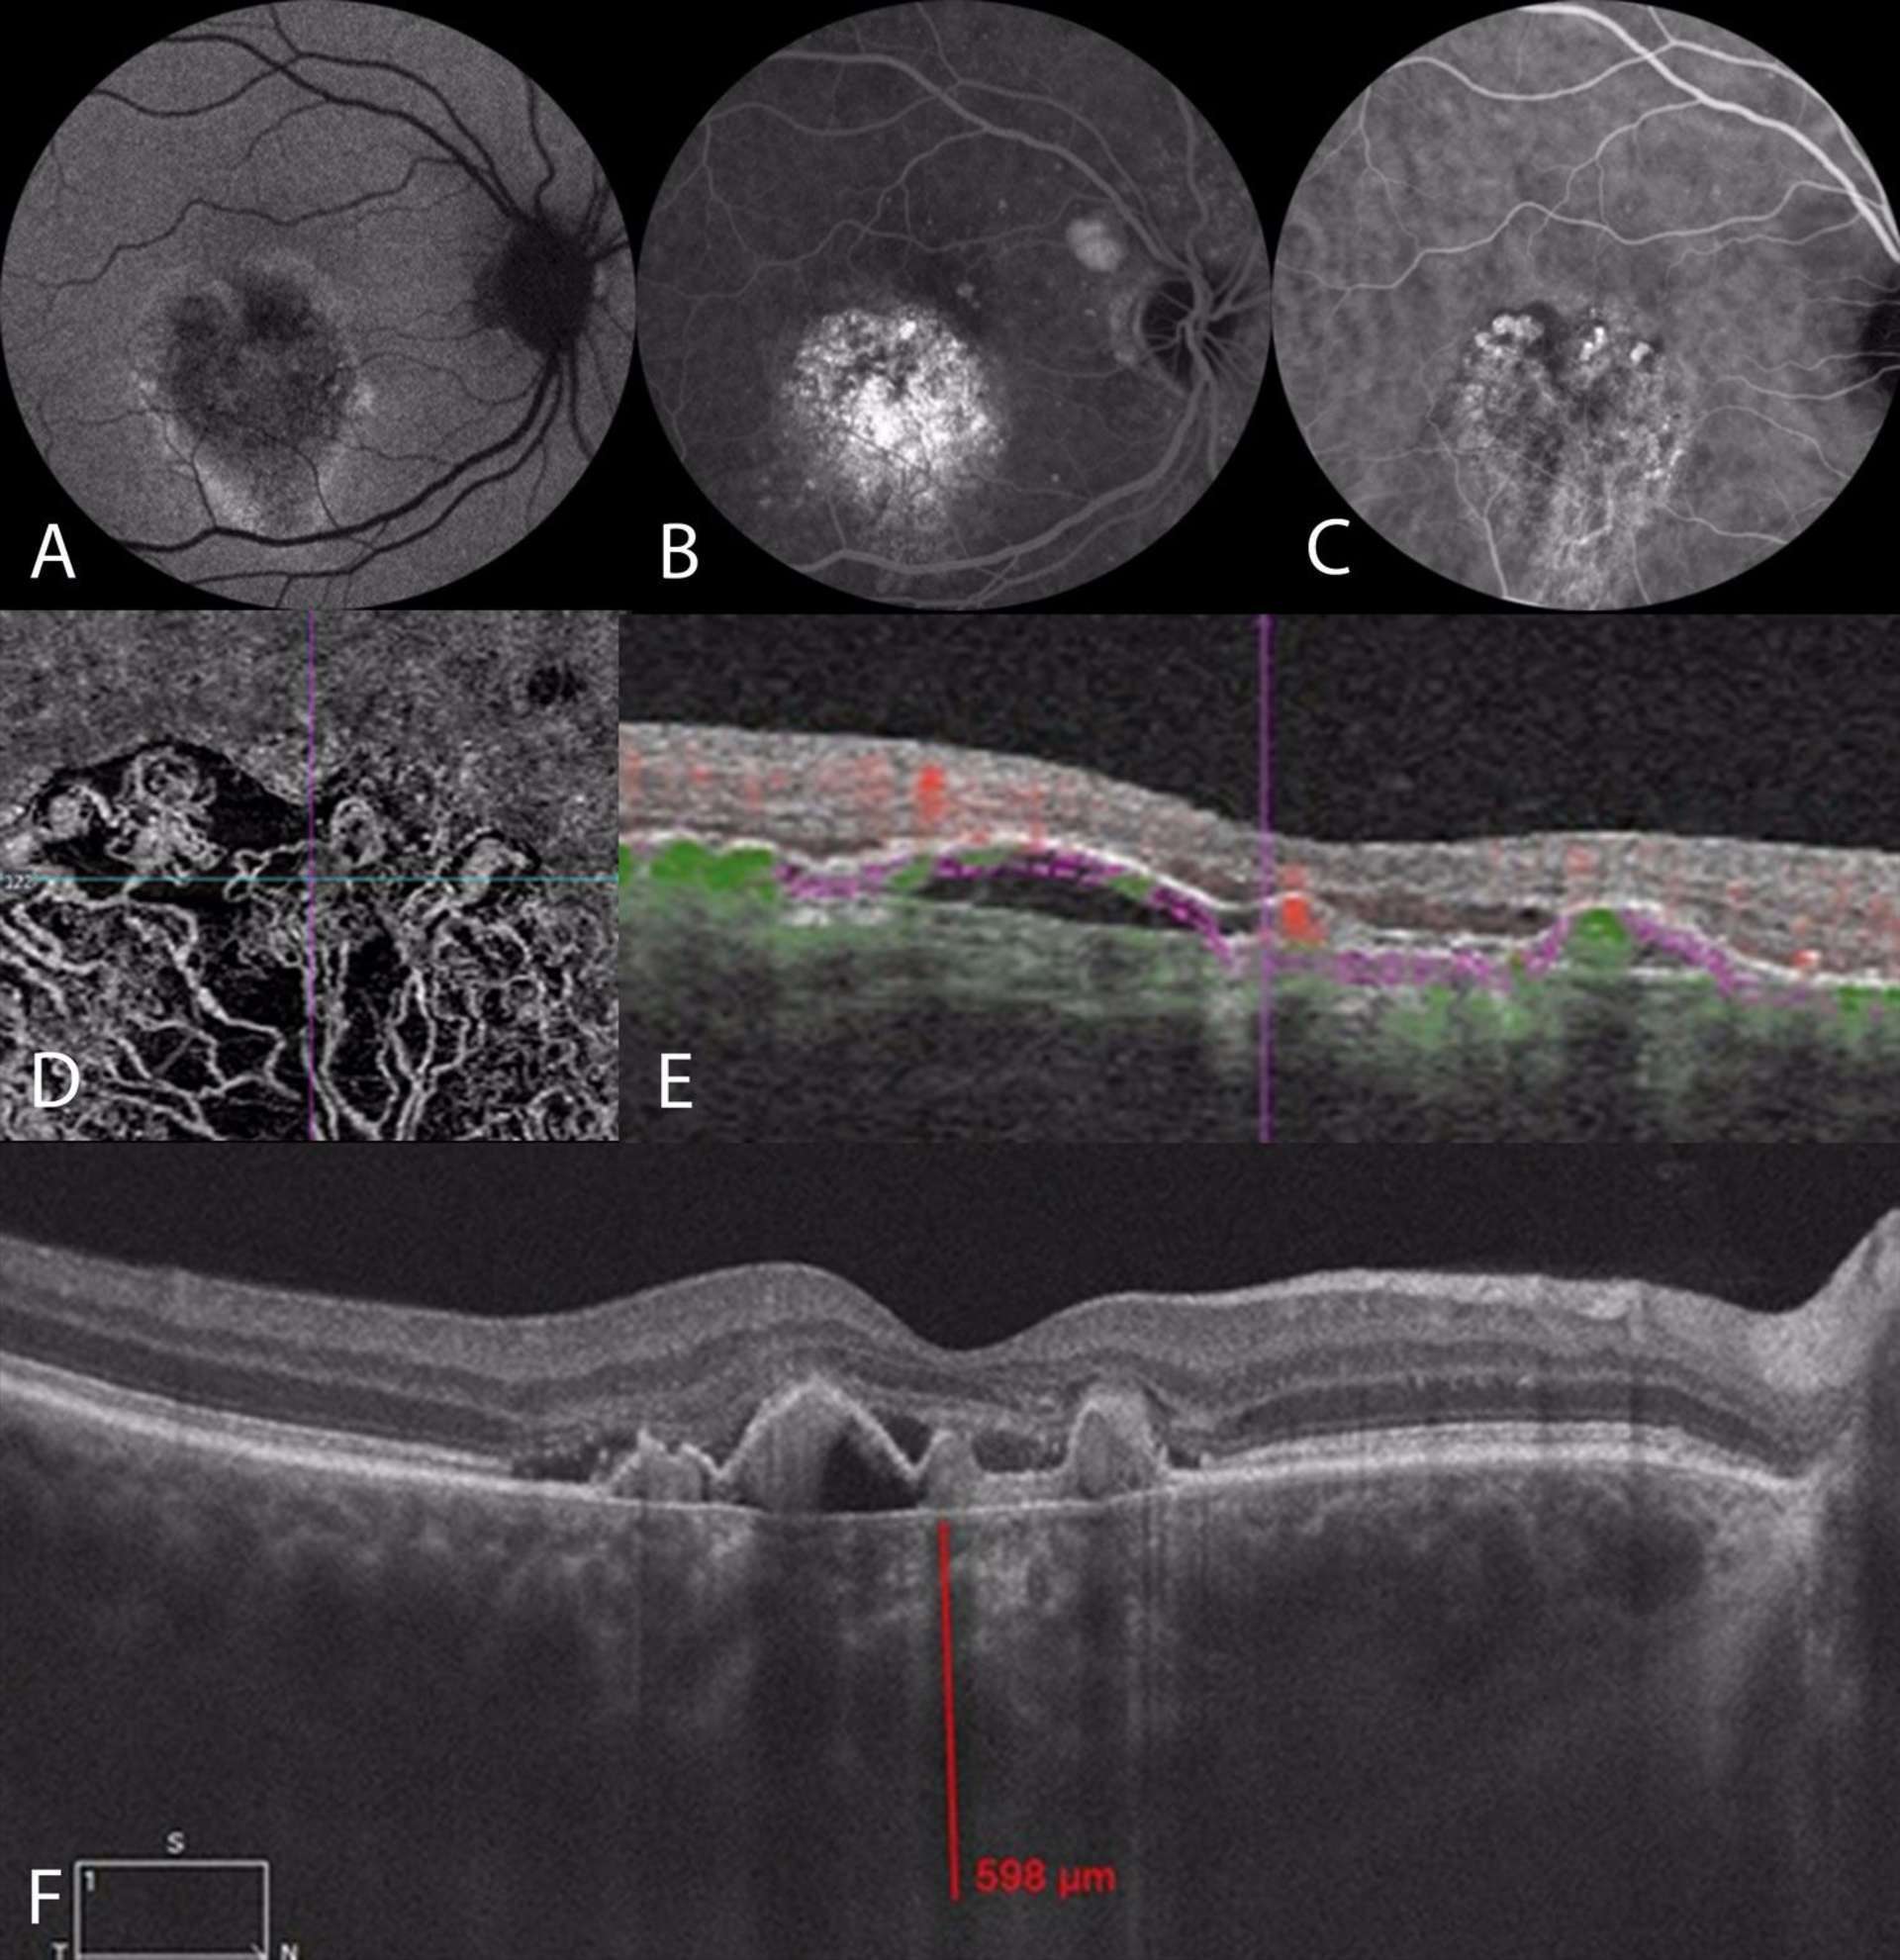 Figure 2. Imagerie multimodale d’un patient de 55 ans présentant une baisse d’acuité visuelle de l’œil droit liée à une vasculopathie polypoïdale associée à une pachychoroïde. Sur le cliché en autofluorescence (A), on note une ébauche de coulée gravitationnelle inféromaculaire. Sur l’angiographie à la fluorescéine au temps tardif (B), il y a une hyperfluorescence hétérogène maculaire avec des pin points. L’angiographie au vert d’indocyanine (C) met en évidence au temps précoce des dilatations polypoïdales en bordure d’un lacis néovasculaire de type 1. Le lacis néovasculaire est bien visible sur l’OCT-A (D), segmenté au niveau de la choriocapillaire (E). La coupe fovéolaire horizontale d’OCT en mode EDI met en évidence des dilatations ogivales entre la membrane de Bruch et l’EPR typiques de polypes, associées à une pachychoroïde mesurée à près de 600 microns au centre de la fovea et à un DSR central. 
